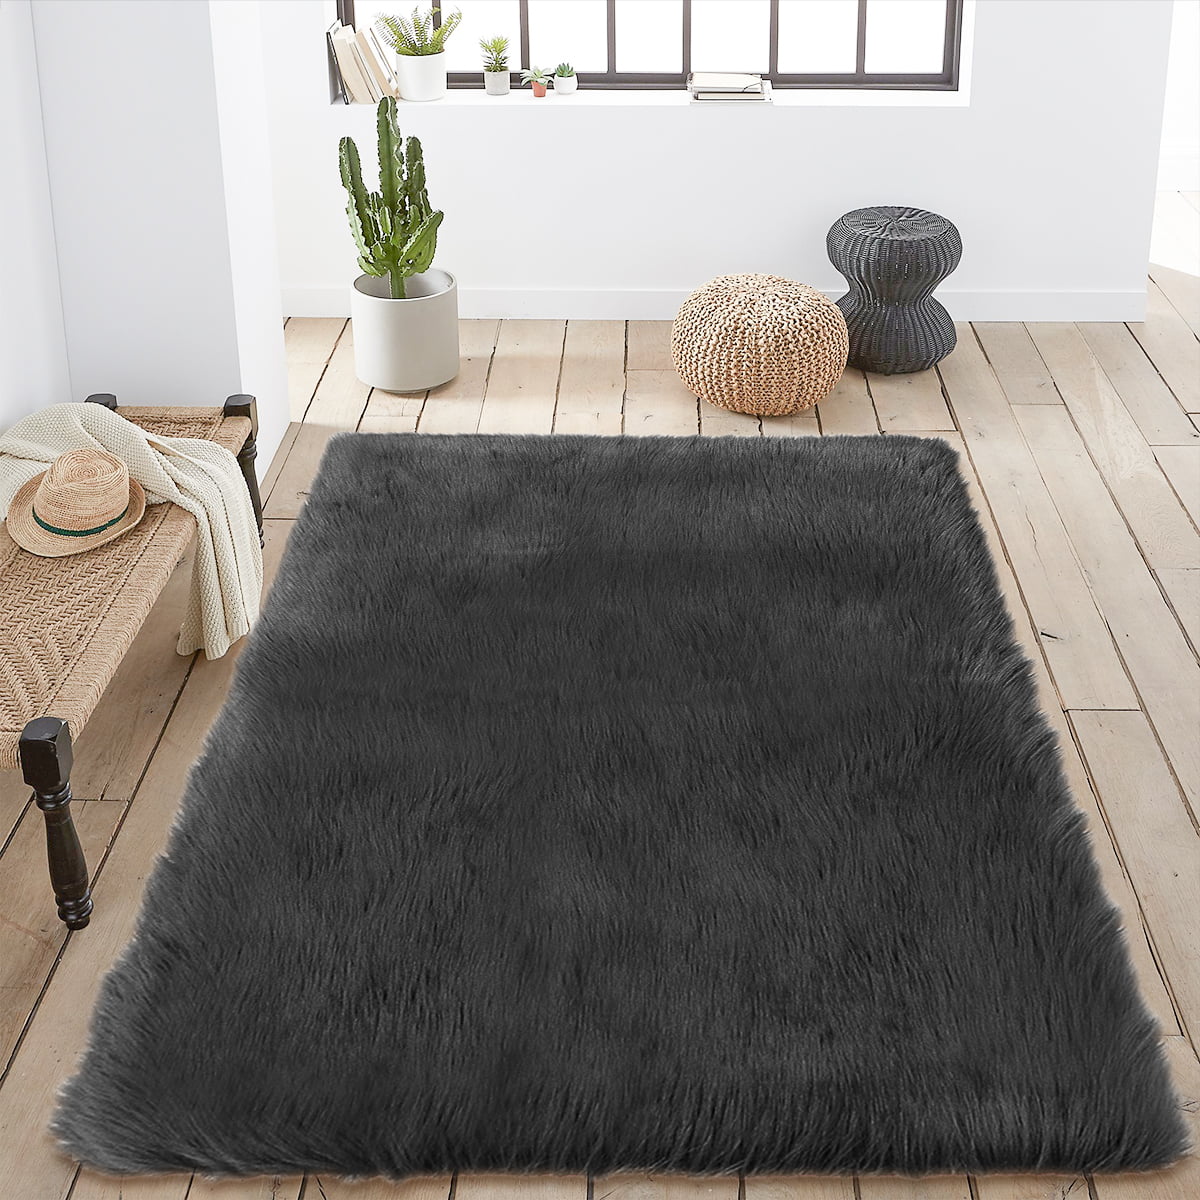 Fluffy Faux Fur Sheepskin Rug Household Bedroom Plush Soft Floor Carpet Rug Mat